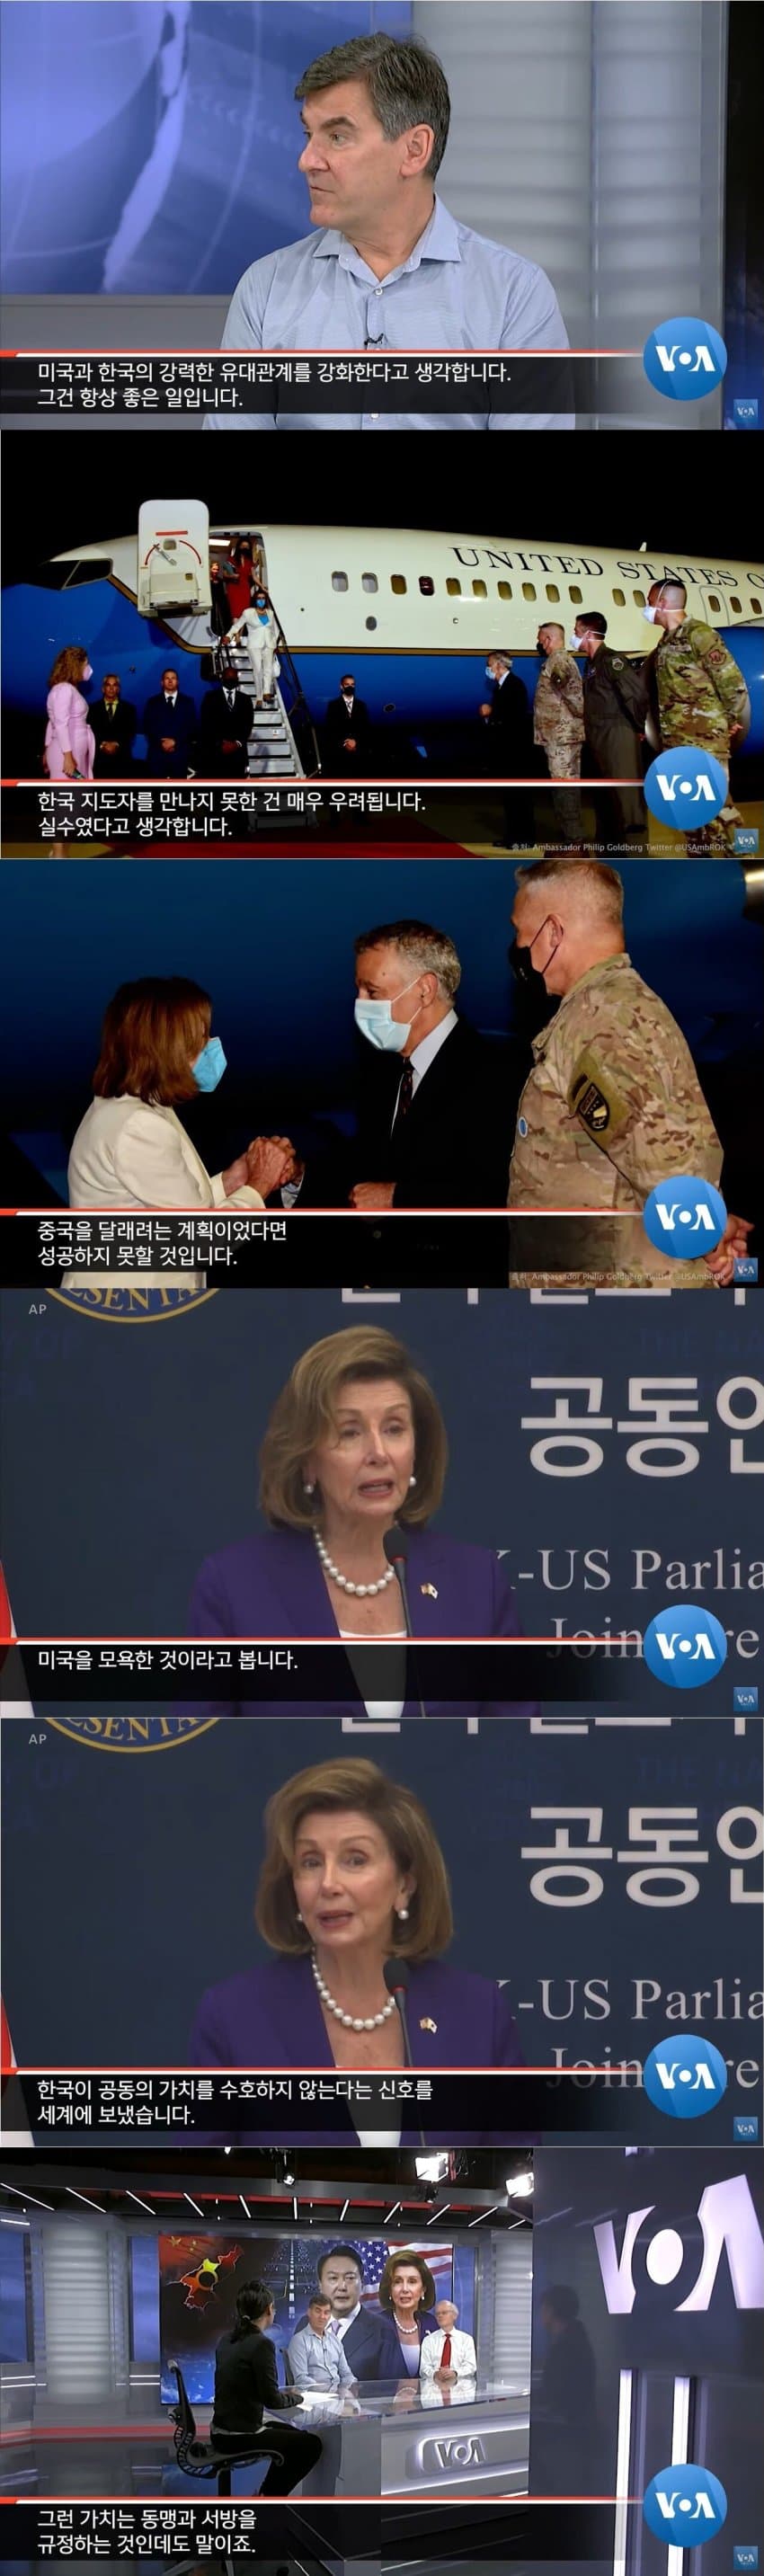 미국이 생각하는 한국의 스탠스